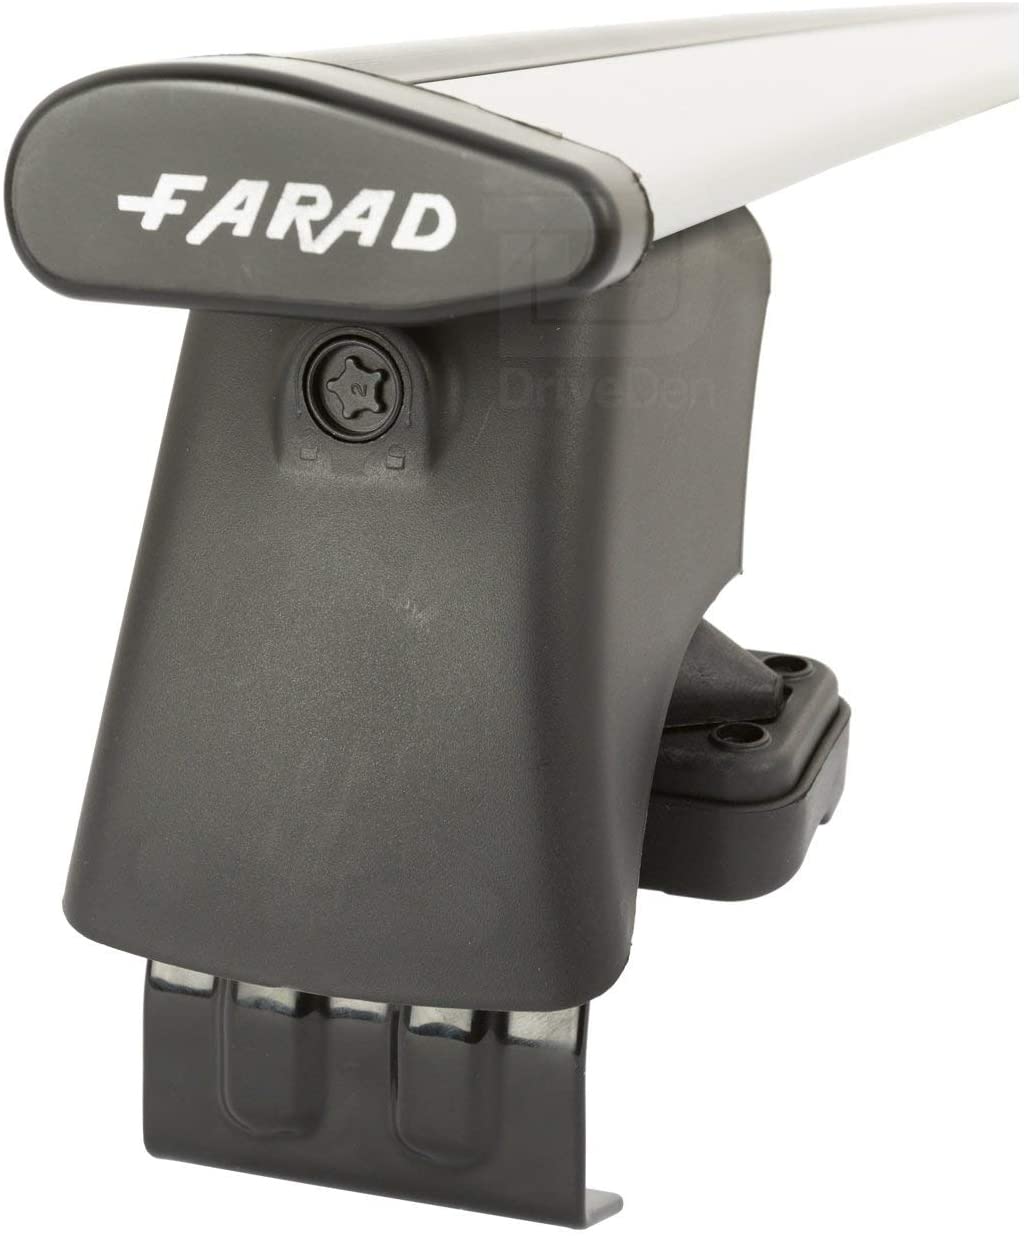 FARAD-Kit H2 per barre portatutto - Fiat Seicento 1998-2005 (senza corrimano)